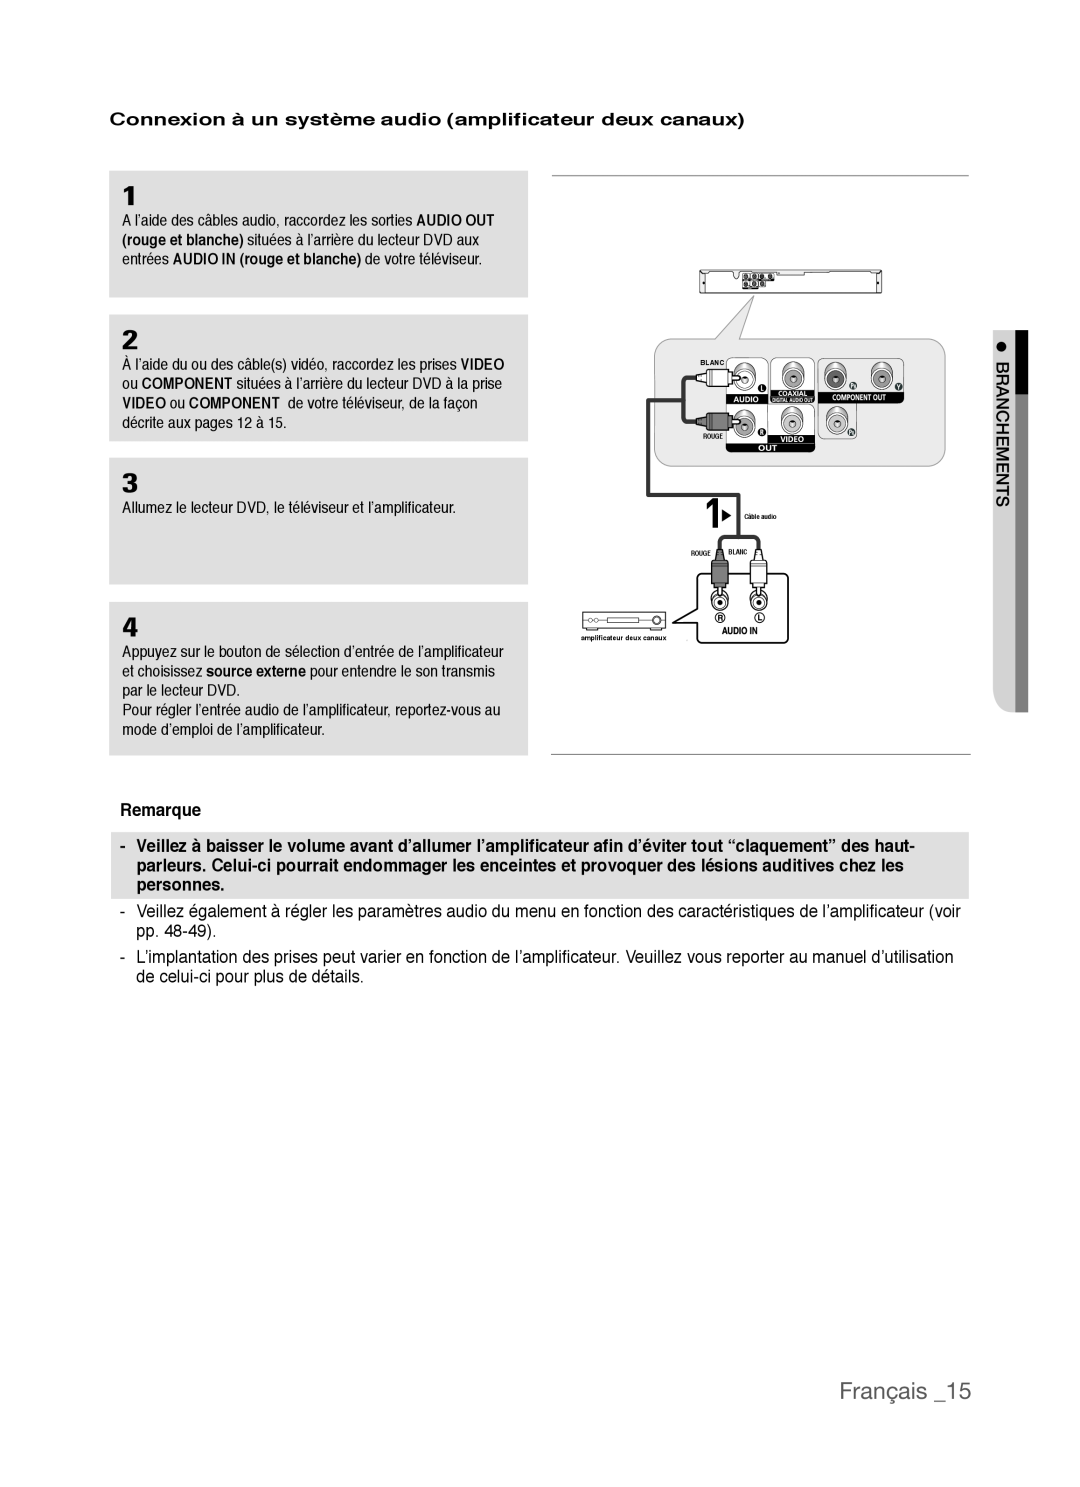 Samsung AK68-01770G, DVD-P390 user manual Français, Connexion à un système audio amplificateur deux canaux, Remarque 